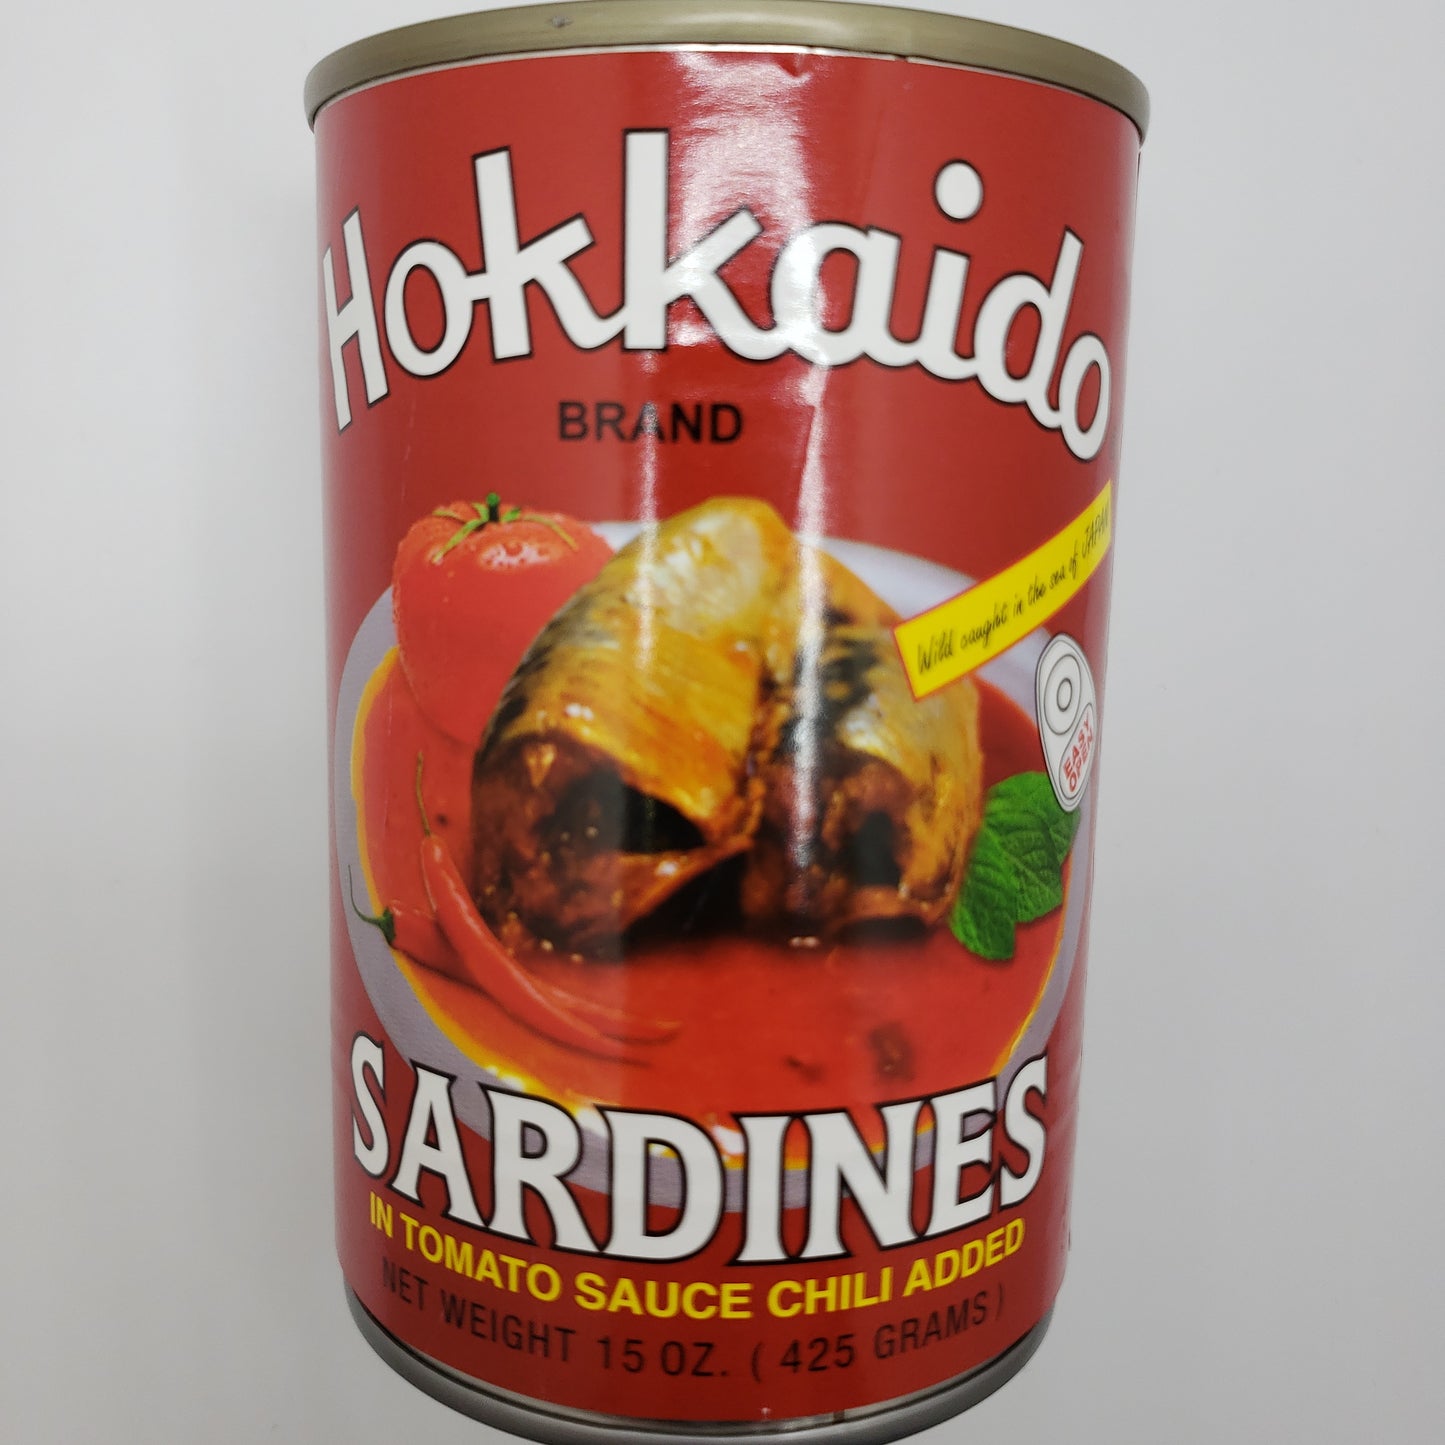 Hokkaido Sardines in Tomato sauce Chili added -5.5oz